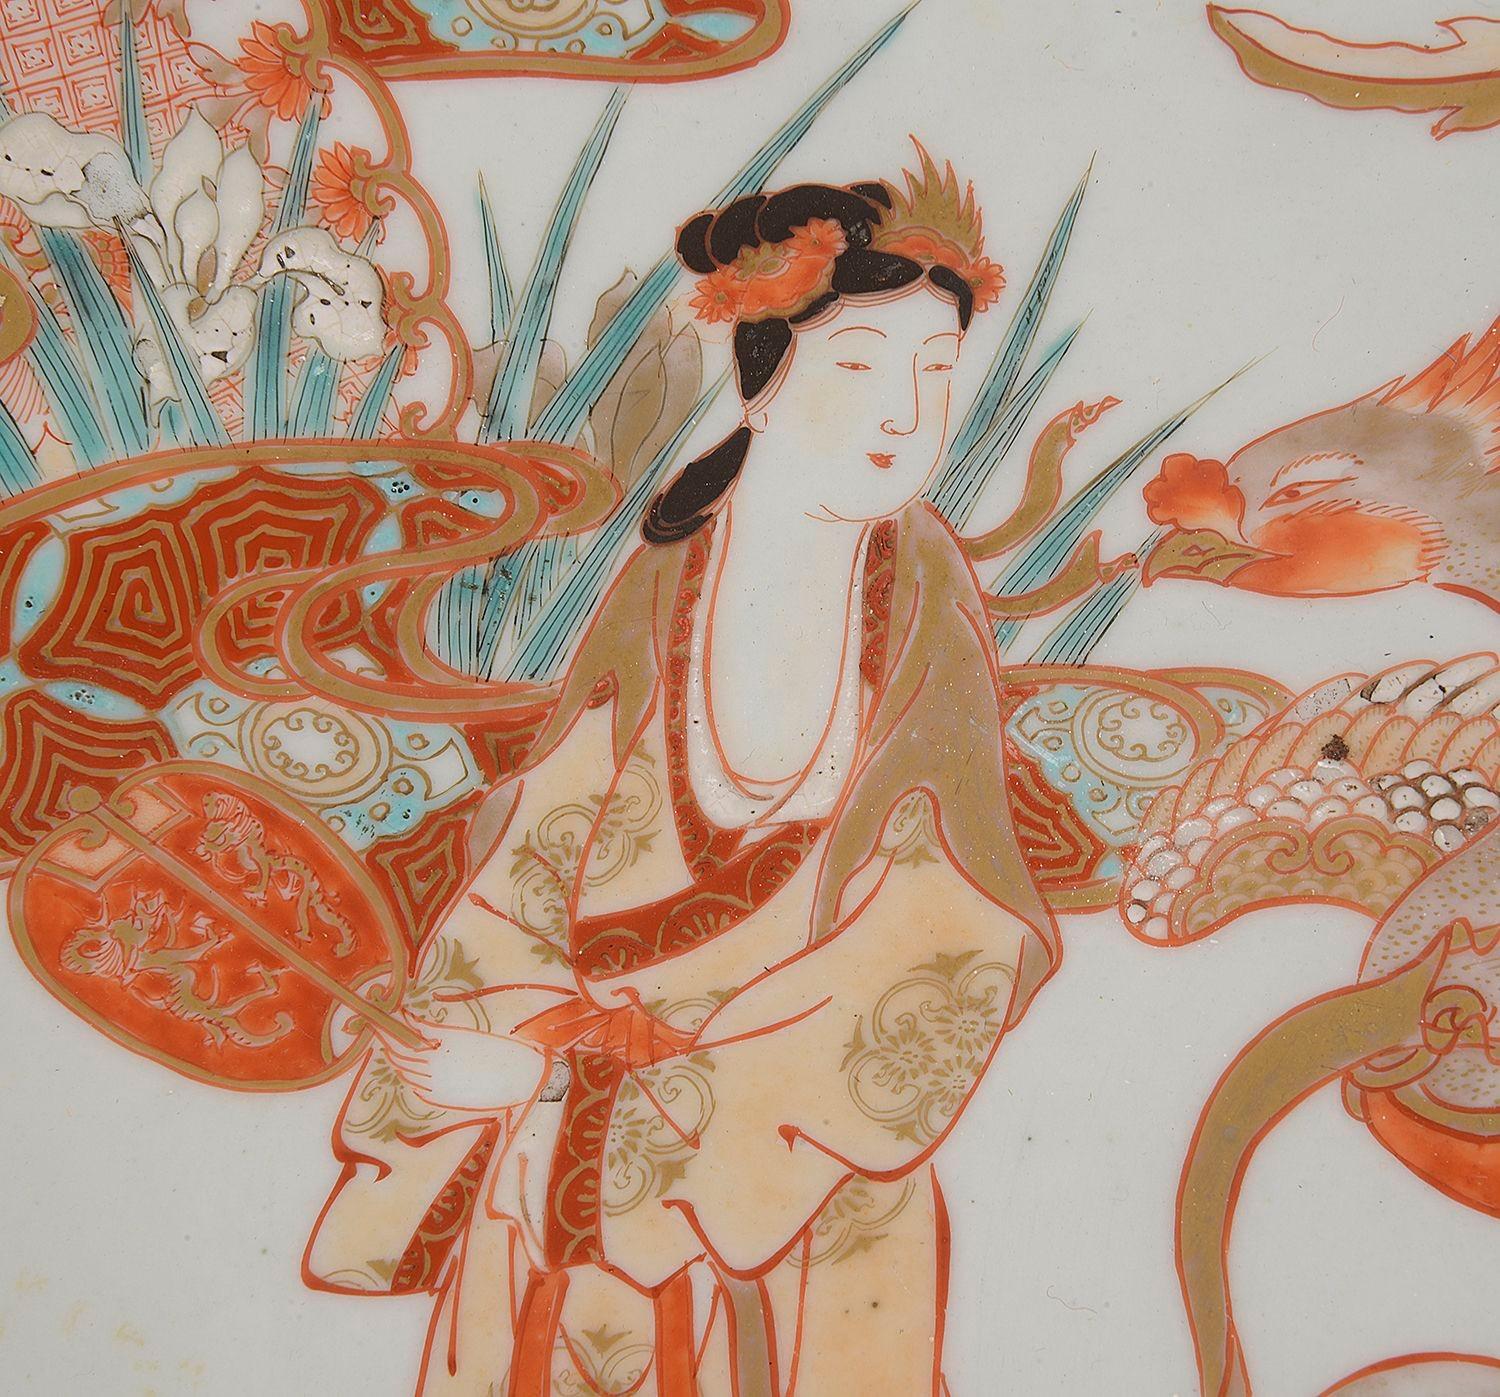 Ein bezauberndes japanisches Imari-Porzellangeschirr aus dem späten 19. Jahrhundert, das Geisha-Mädchen darstellt, die von exotischen mythischen Drachen und Vögeln zwischen Schilf und Blumen getragen werden.


Charge 76 N/H